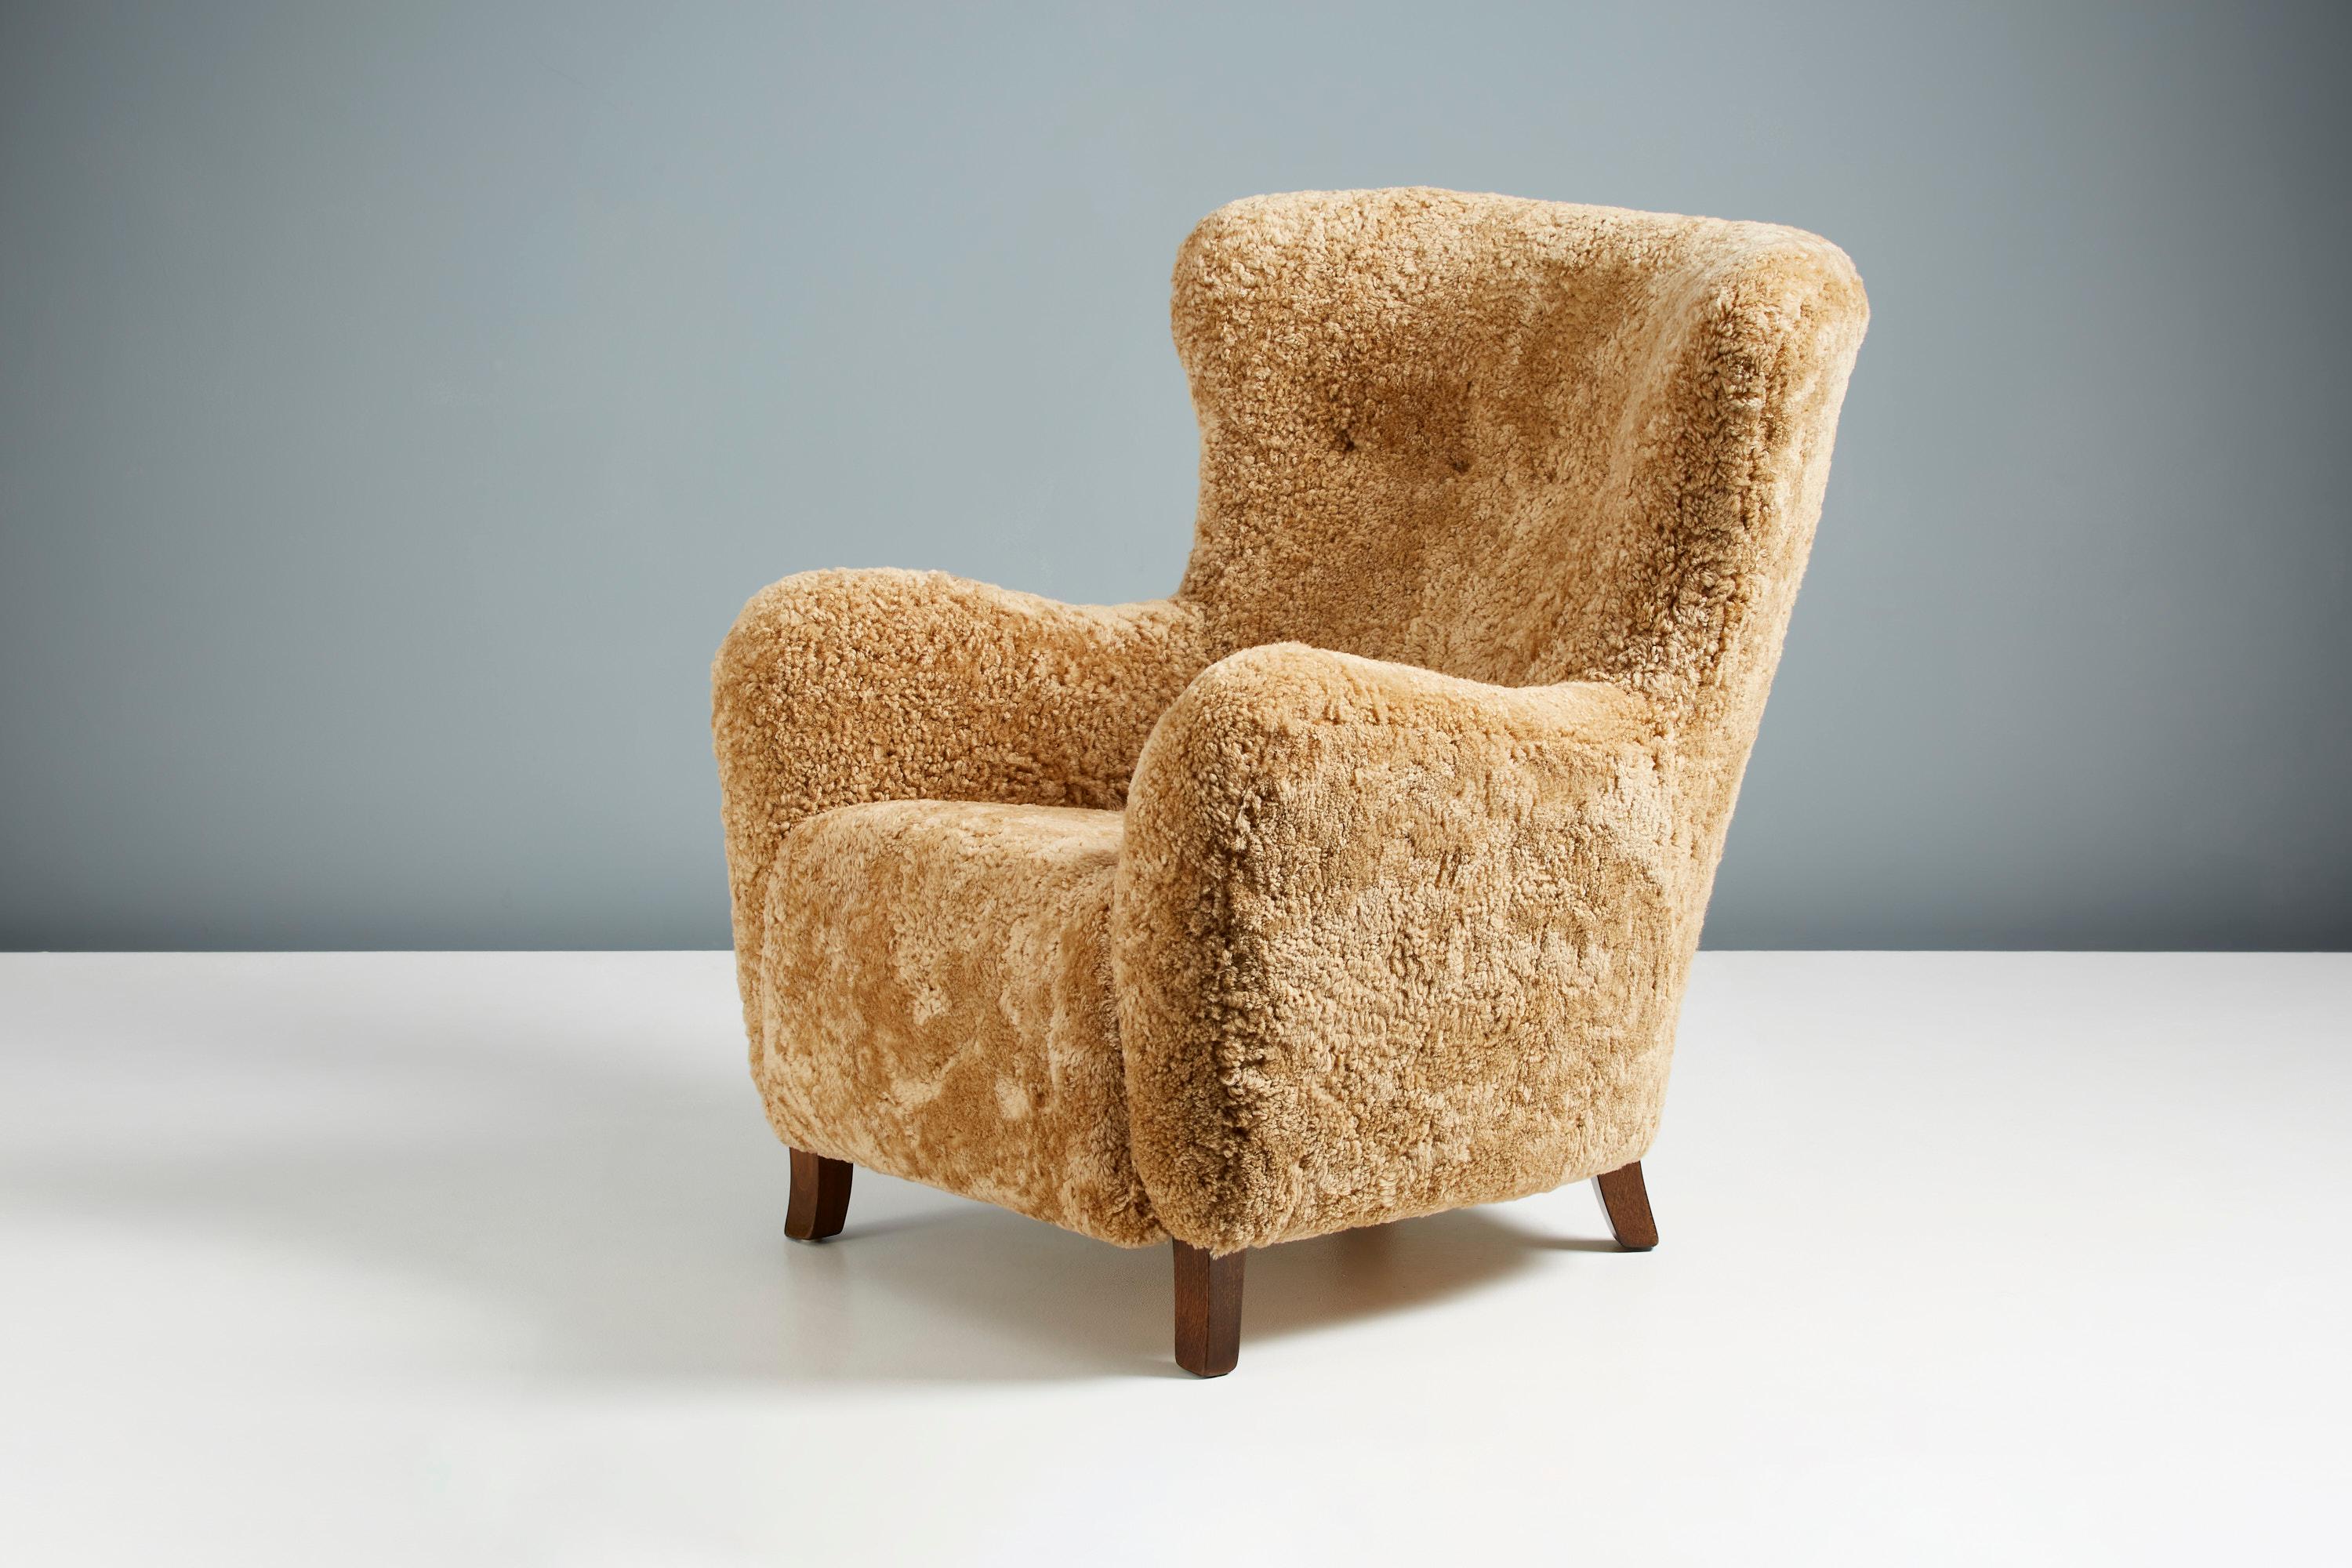 Dagmar Design - Chaise à oreilles Sampo.

Le fauteuil à oreilles Sampo fait partie de la gamme de meubles rembourrés sur mesure de Dagmar Design. Cette pièce a été conçue et fabriquée à la main dans nos ateliers de Londres, avec des matériaux de